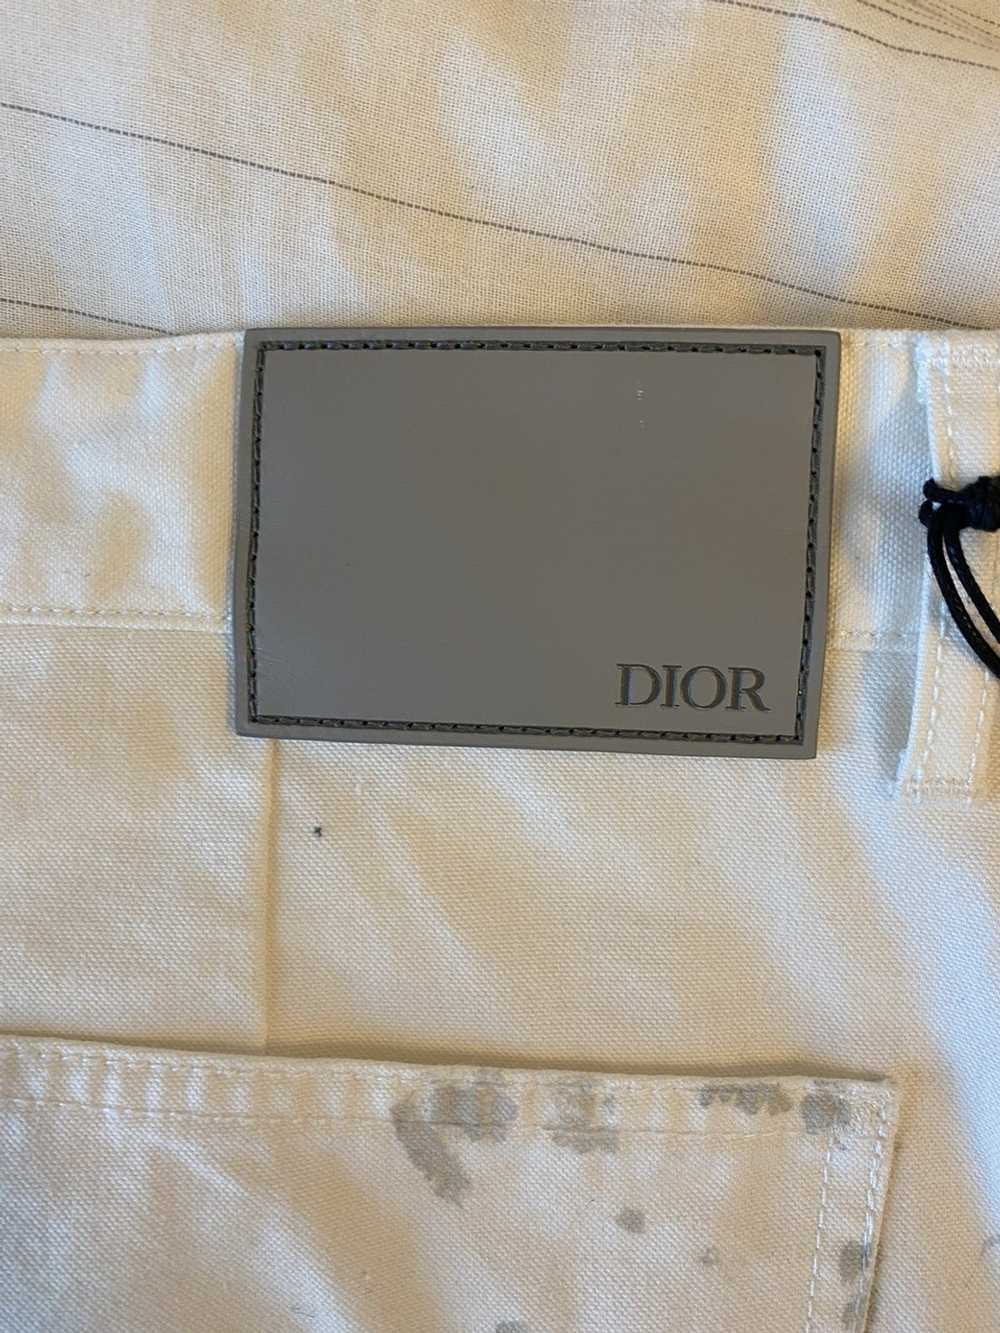 Dior Dior Paint Splatter Carpenter Jeans - image 7